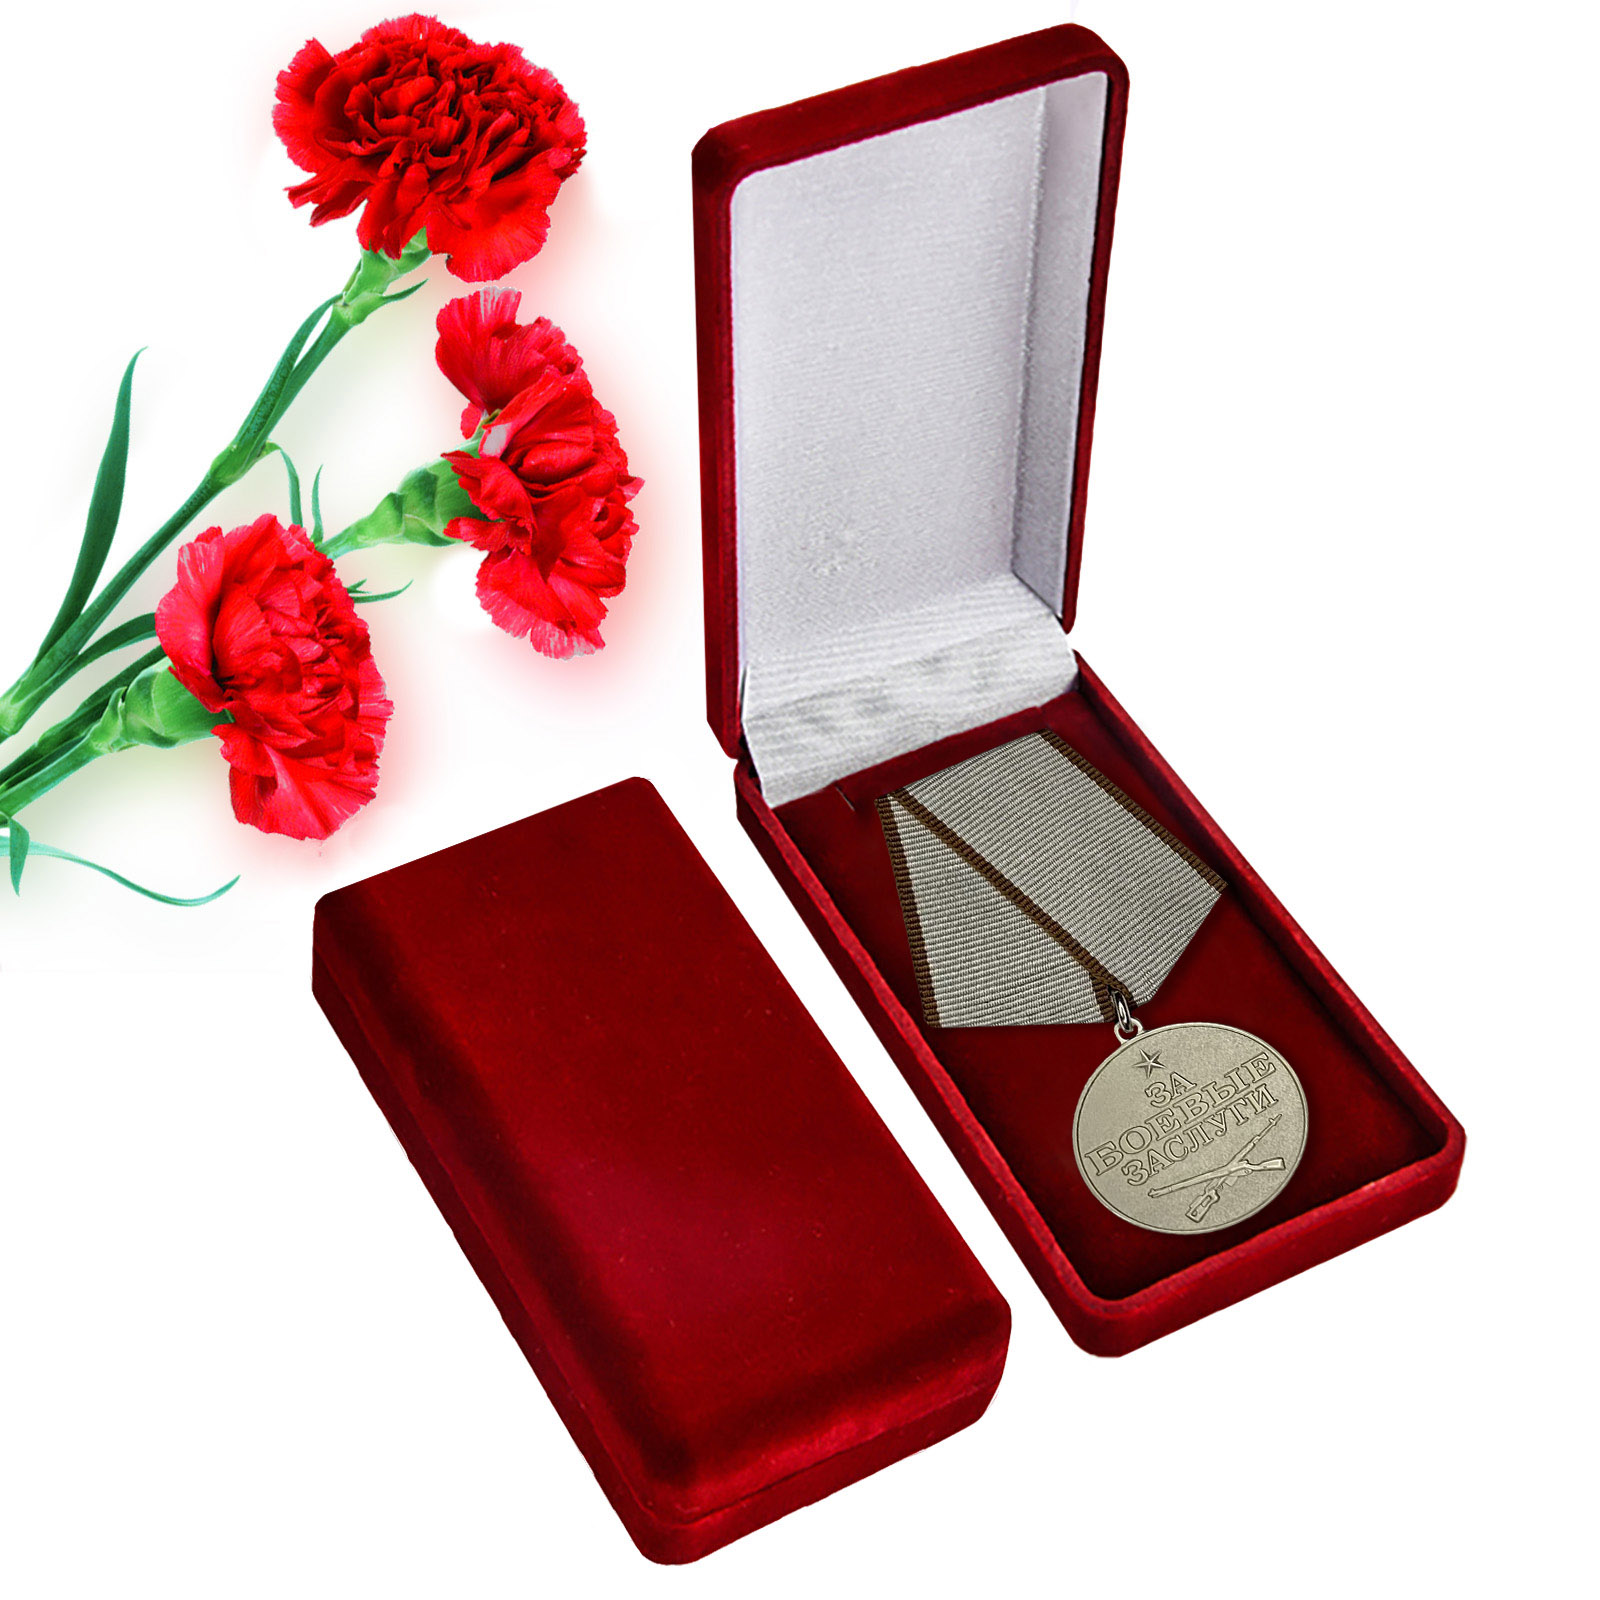 Медаль "За боевые заслуги" РФ Общественного наградного Комитета